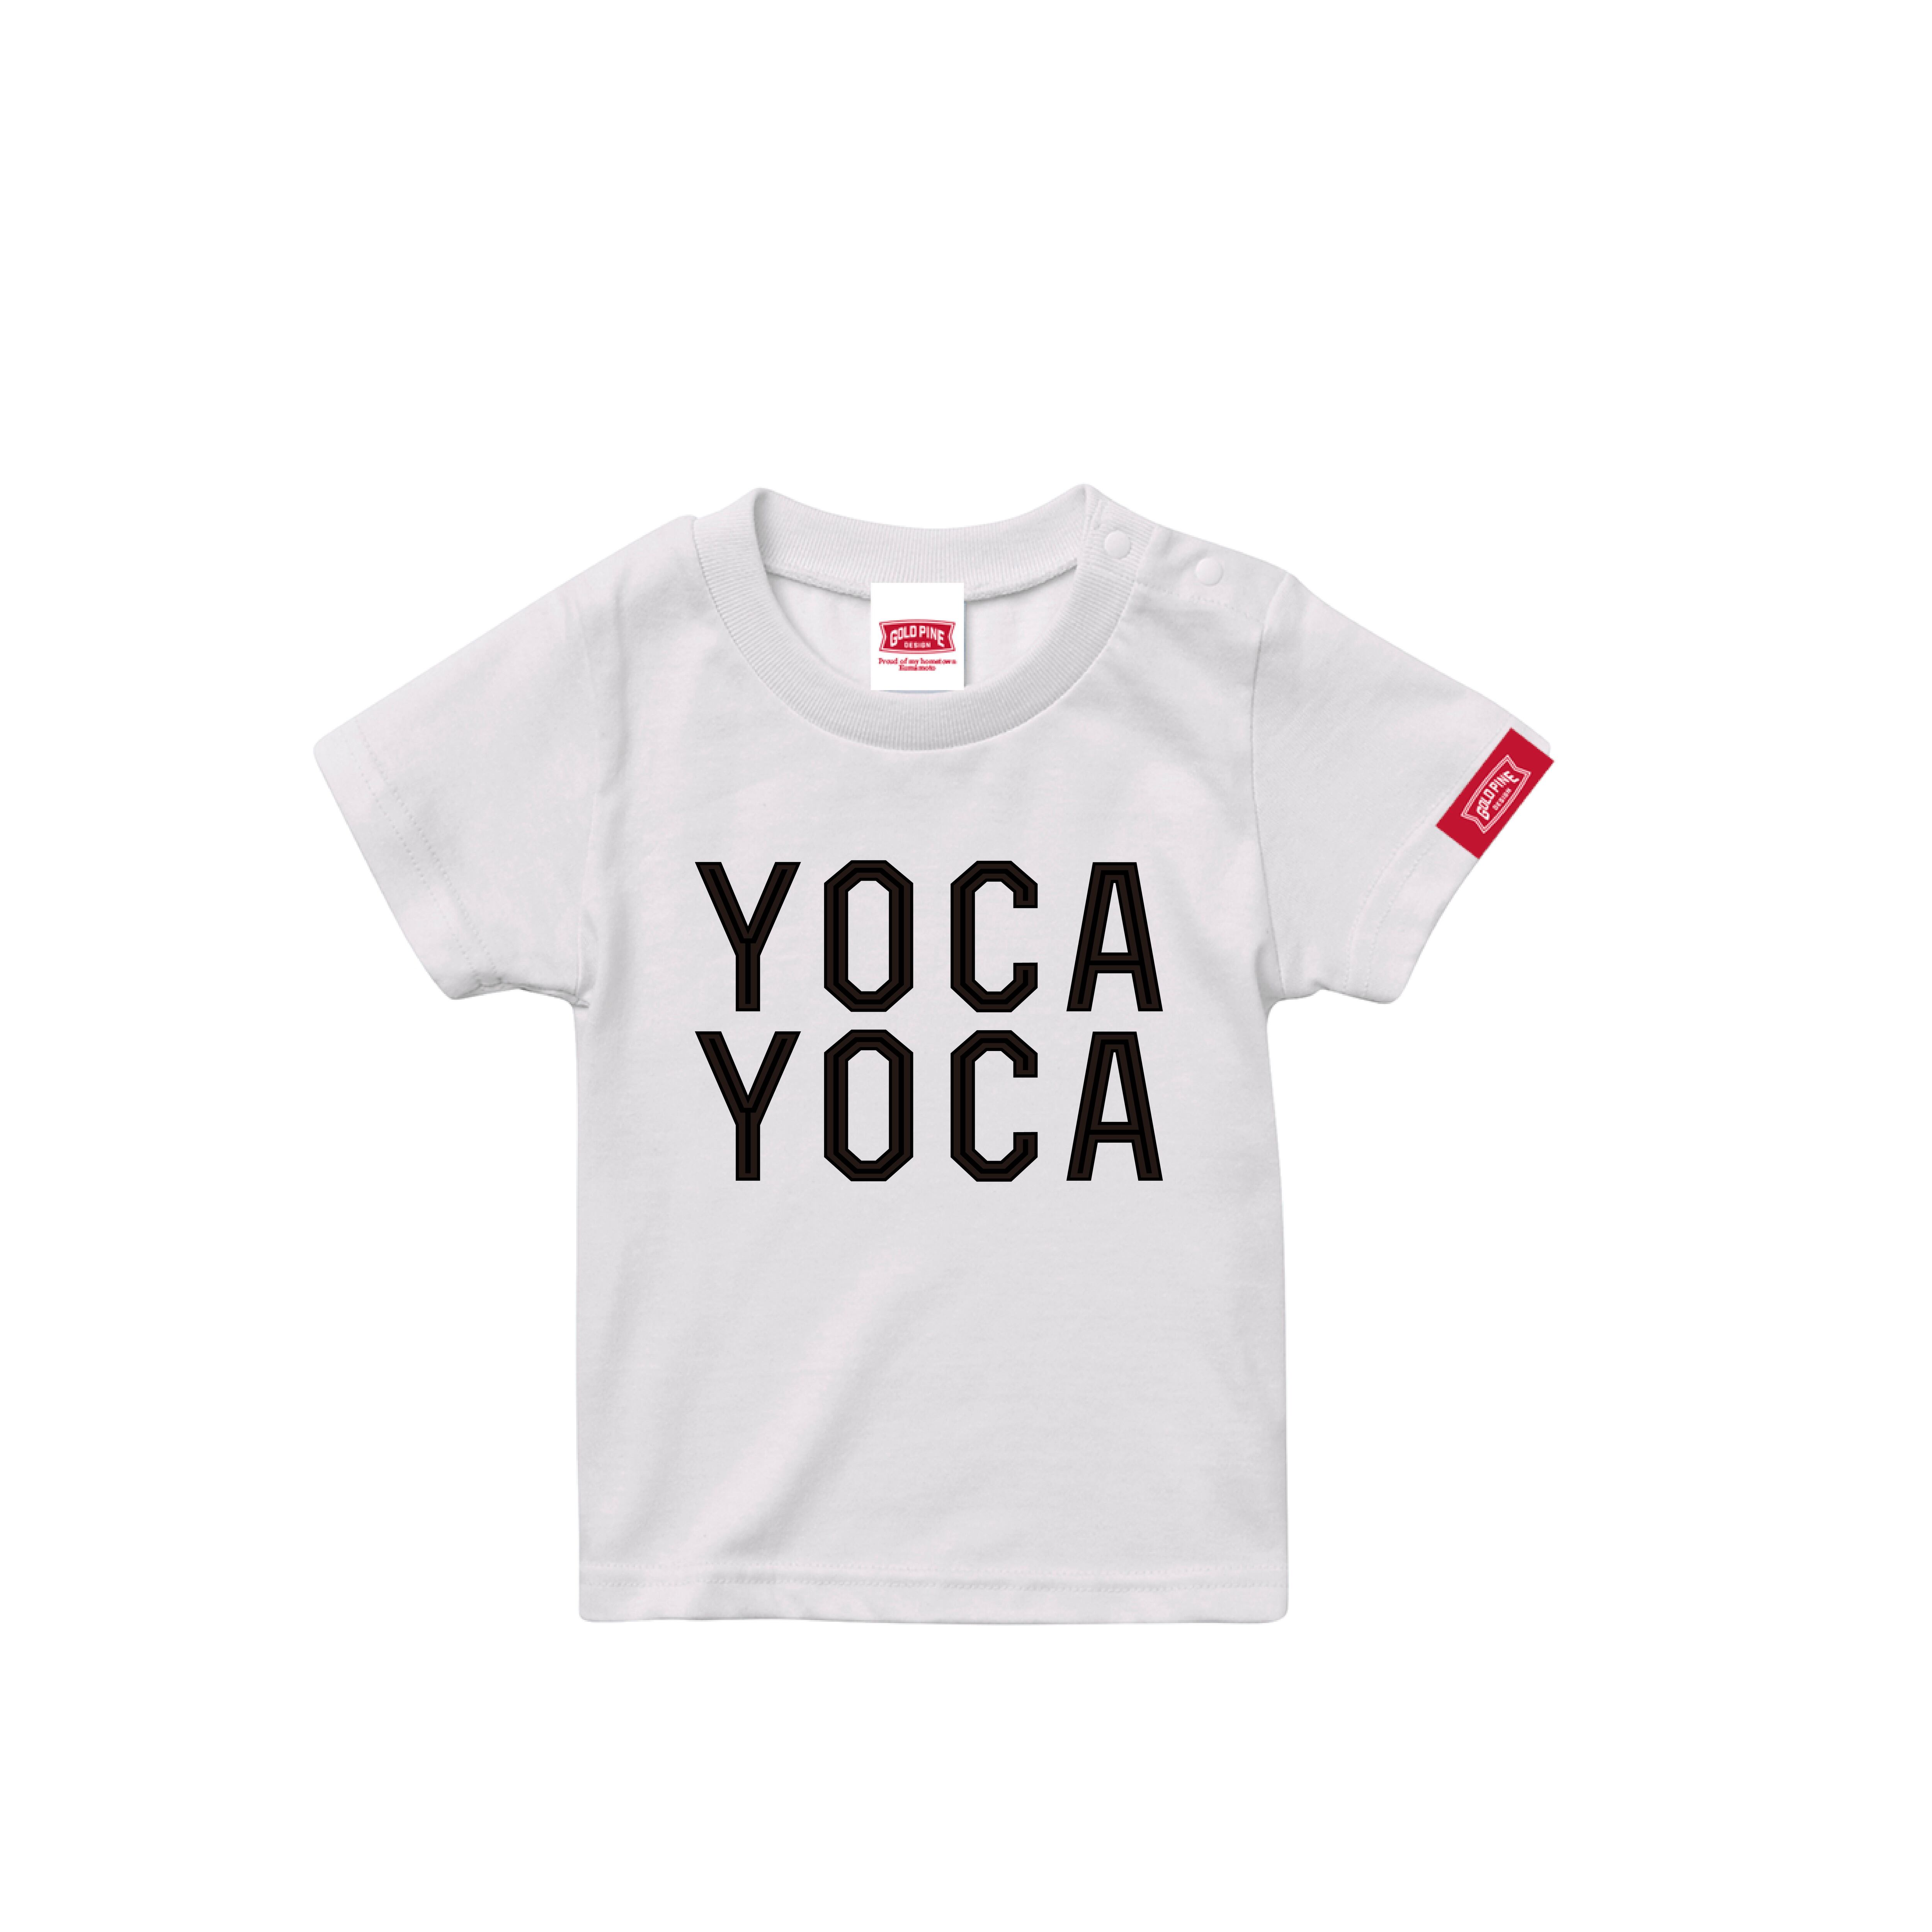 YOCAYOCA-Tshirt【Kids】White